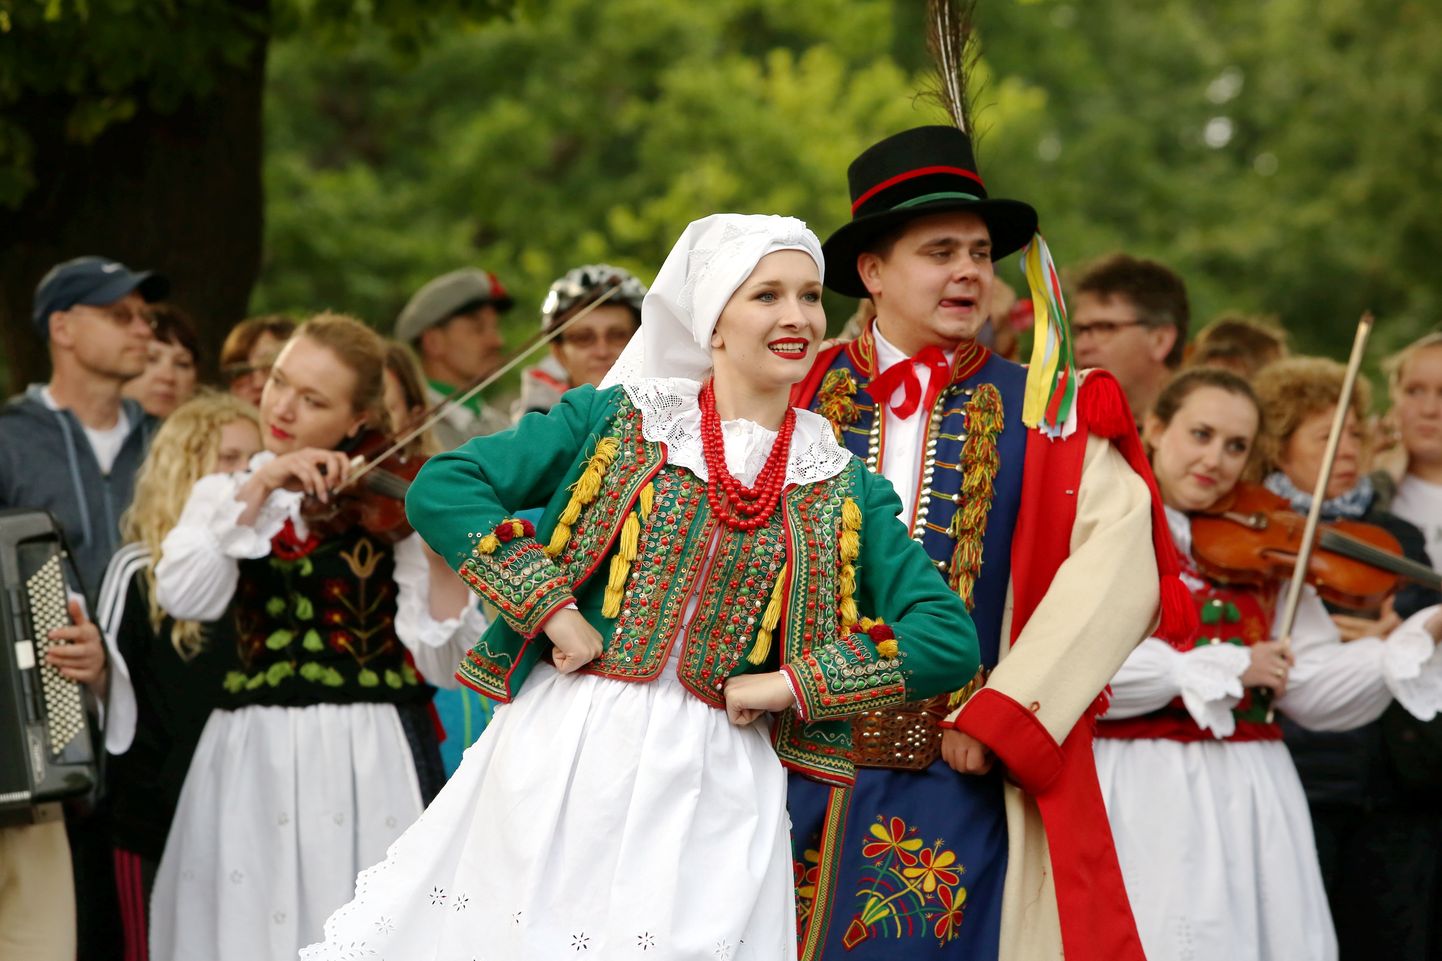 IX Starptautiskā tautas deju festivāla "Sudmaliņas" ieskandināšanas pasākums pie Brīvības pieminekļa.